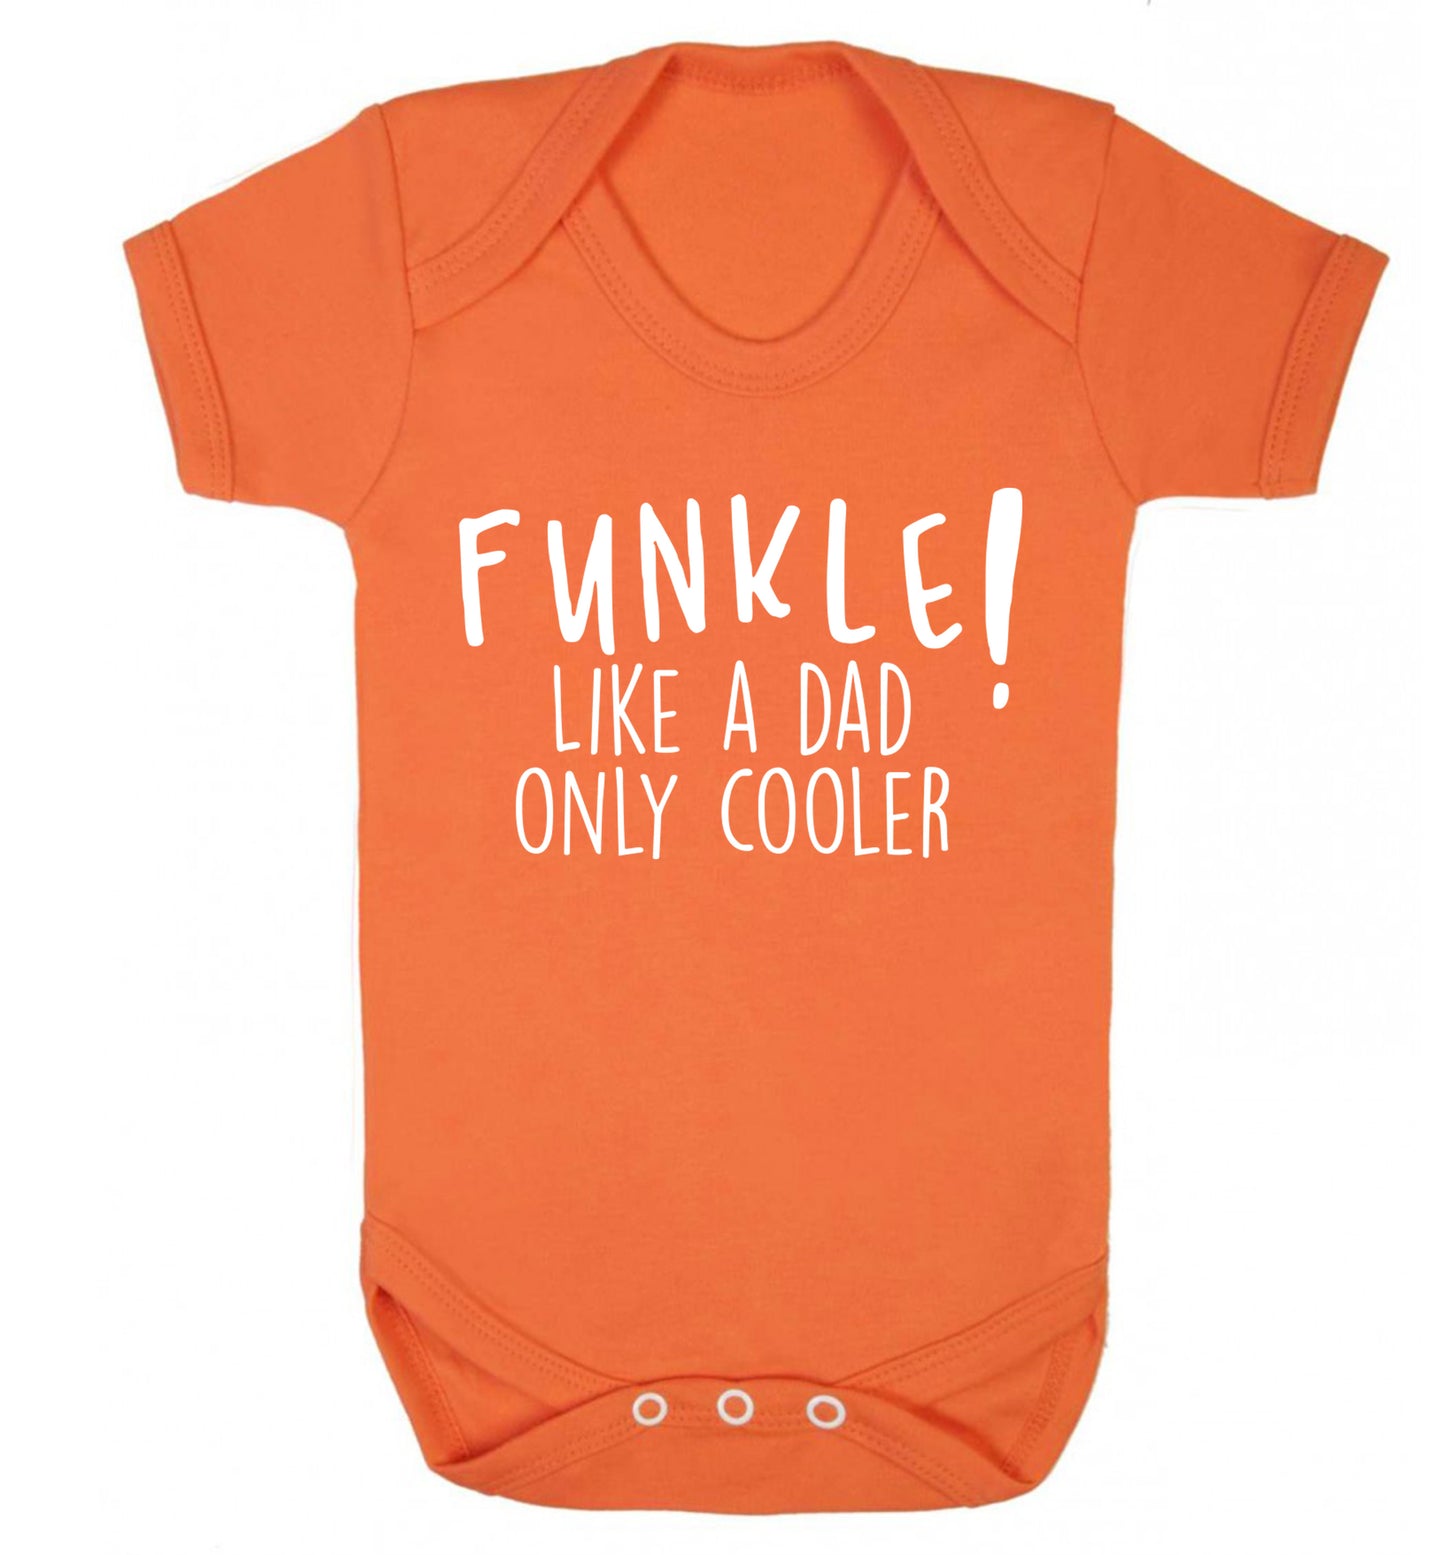 Funkle Like a Dad Only Cooler Baby Vest orange 18-24 months